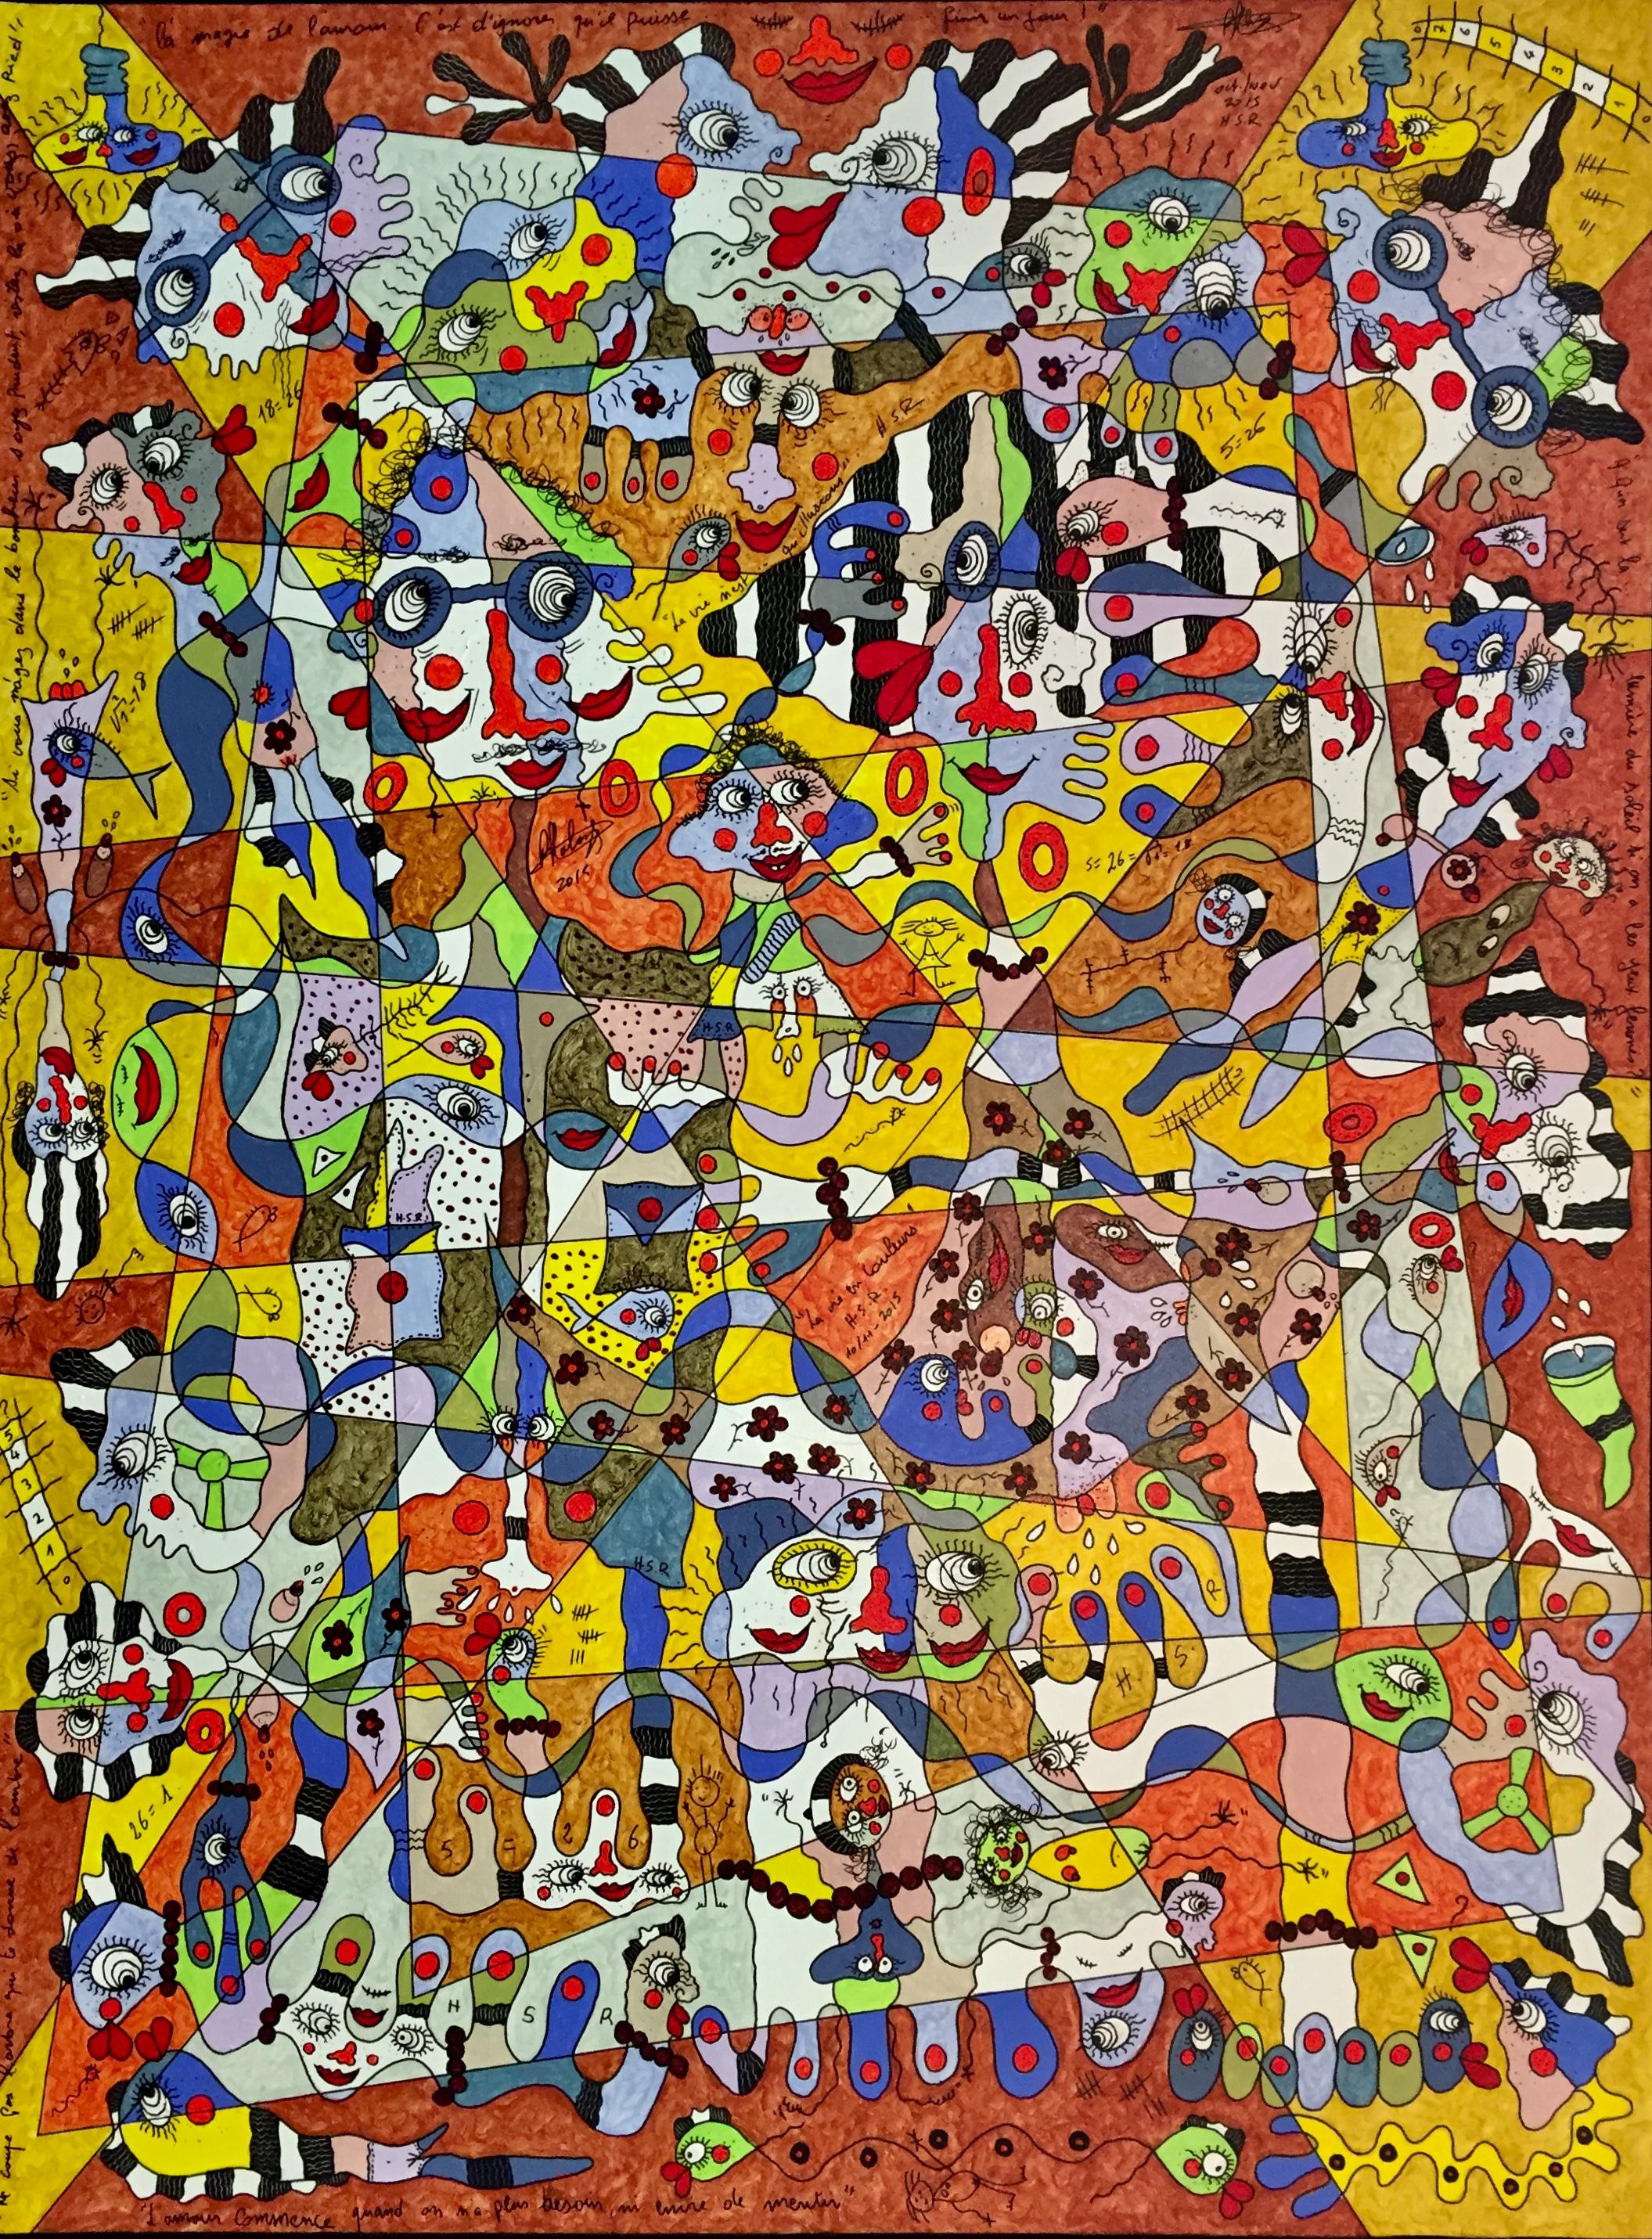 Leben in Farben - Großes abstraktes Gemälde Lila, Rot, Weiß, Braun und Grün